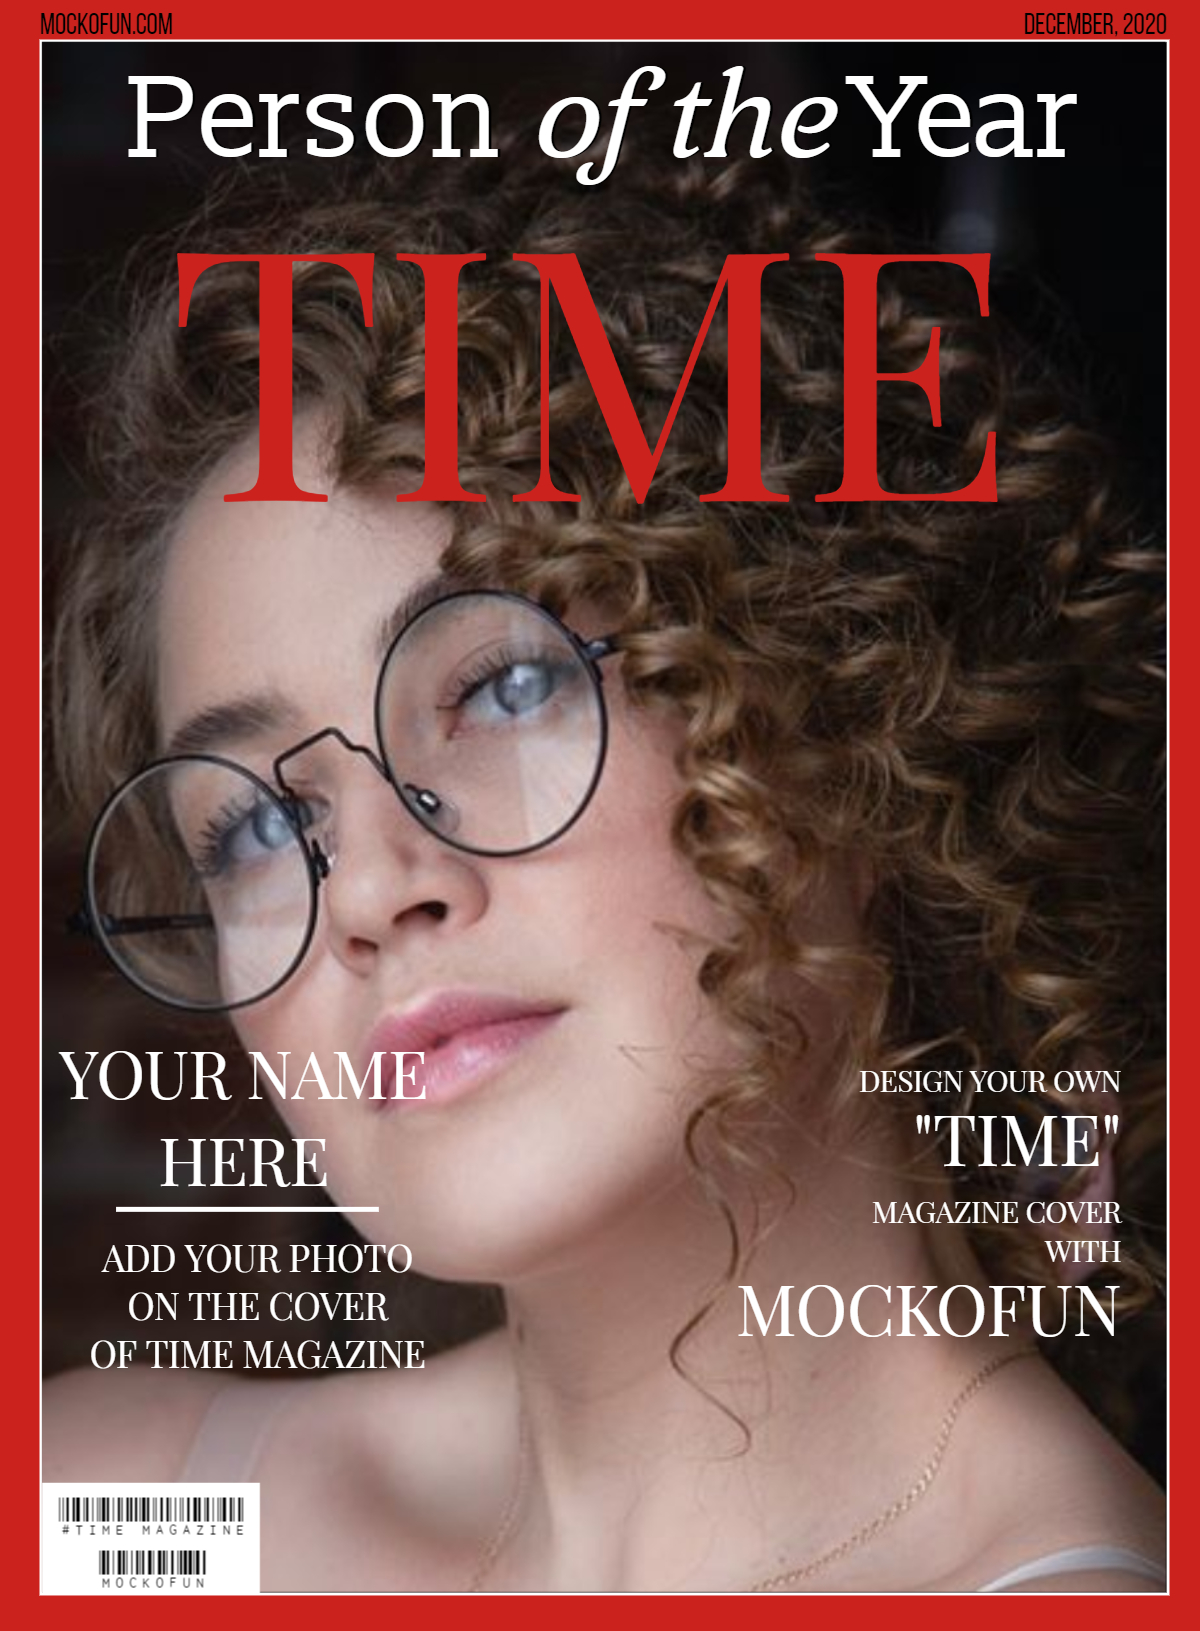 Forog Felt telez Szekr ny Fake Time Magazine Cover Maker Kakadu K rnyez Kett s